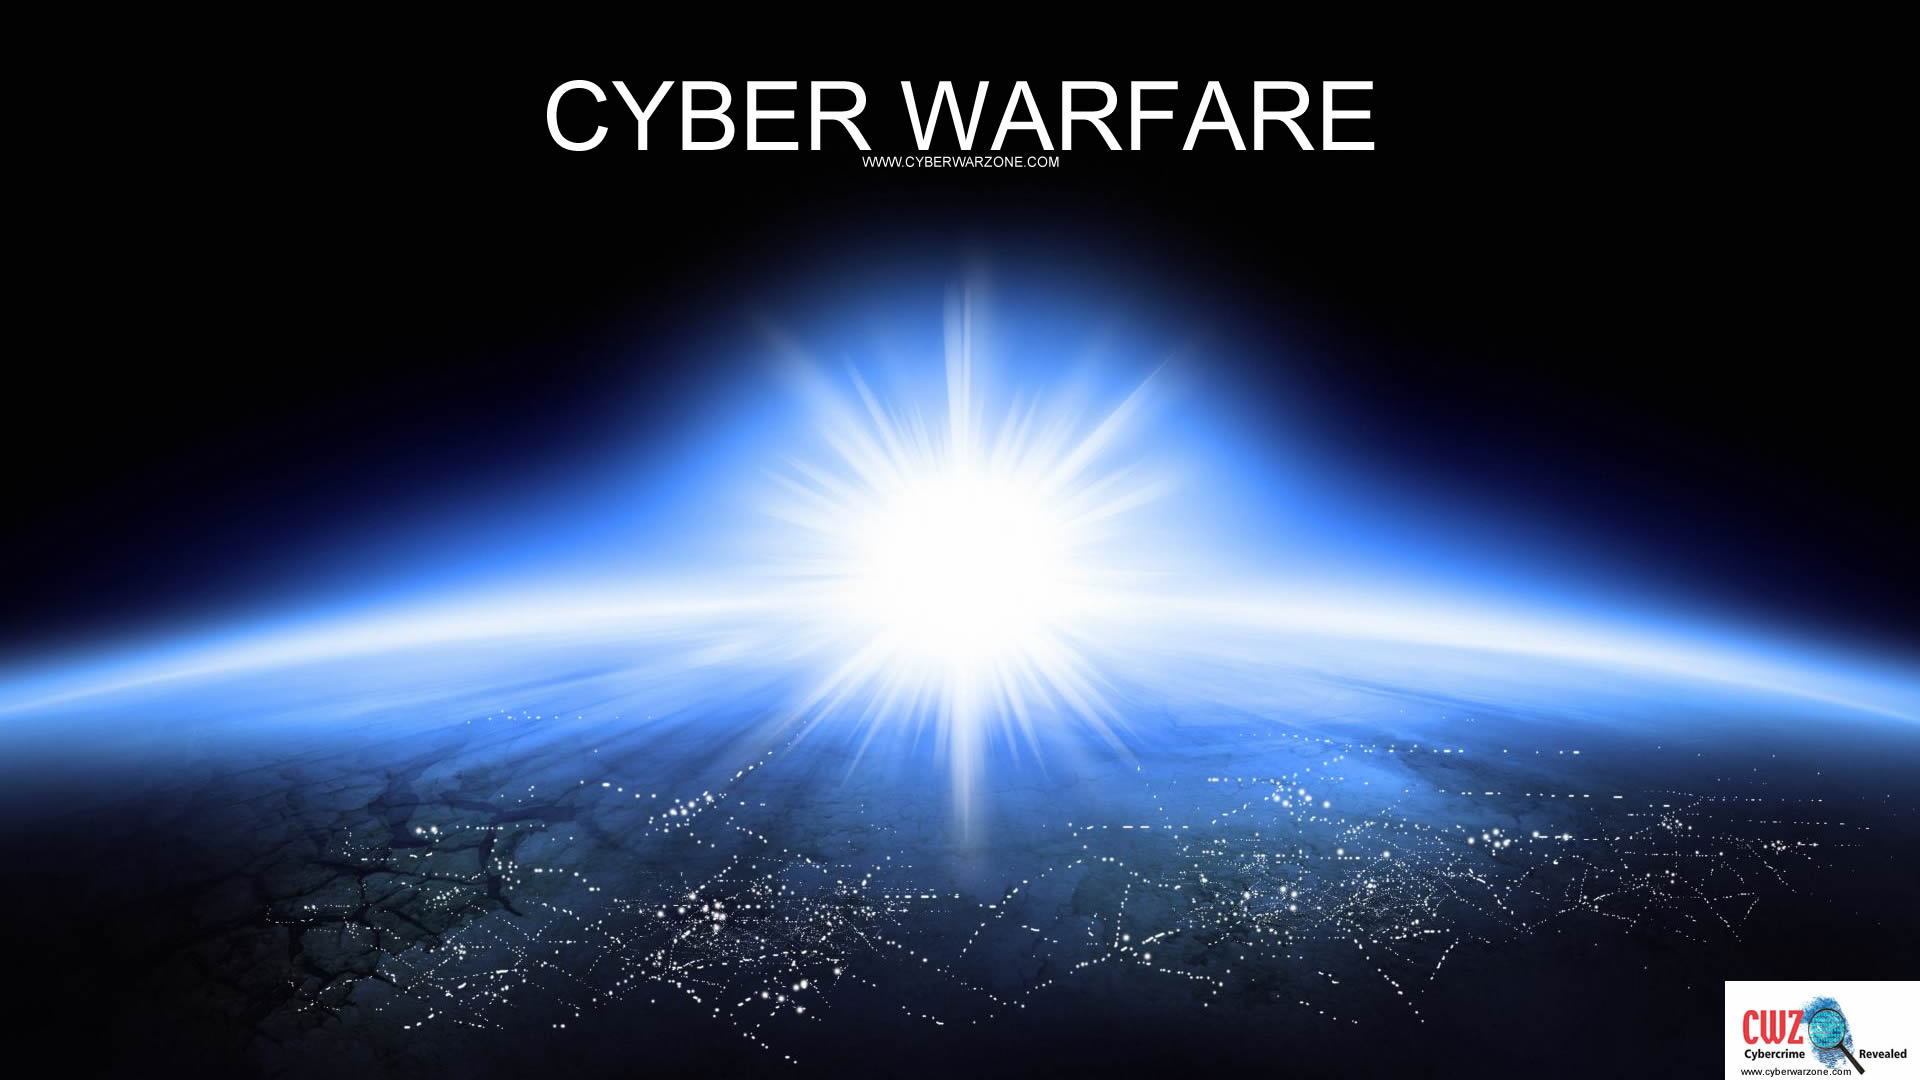 Cyber warfare wallpapers   Cyberwarzone